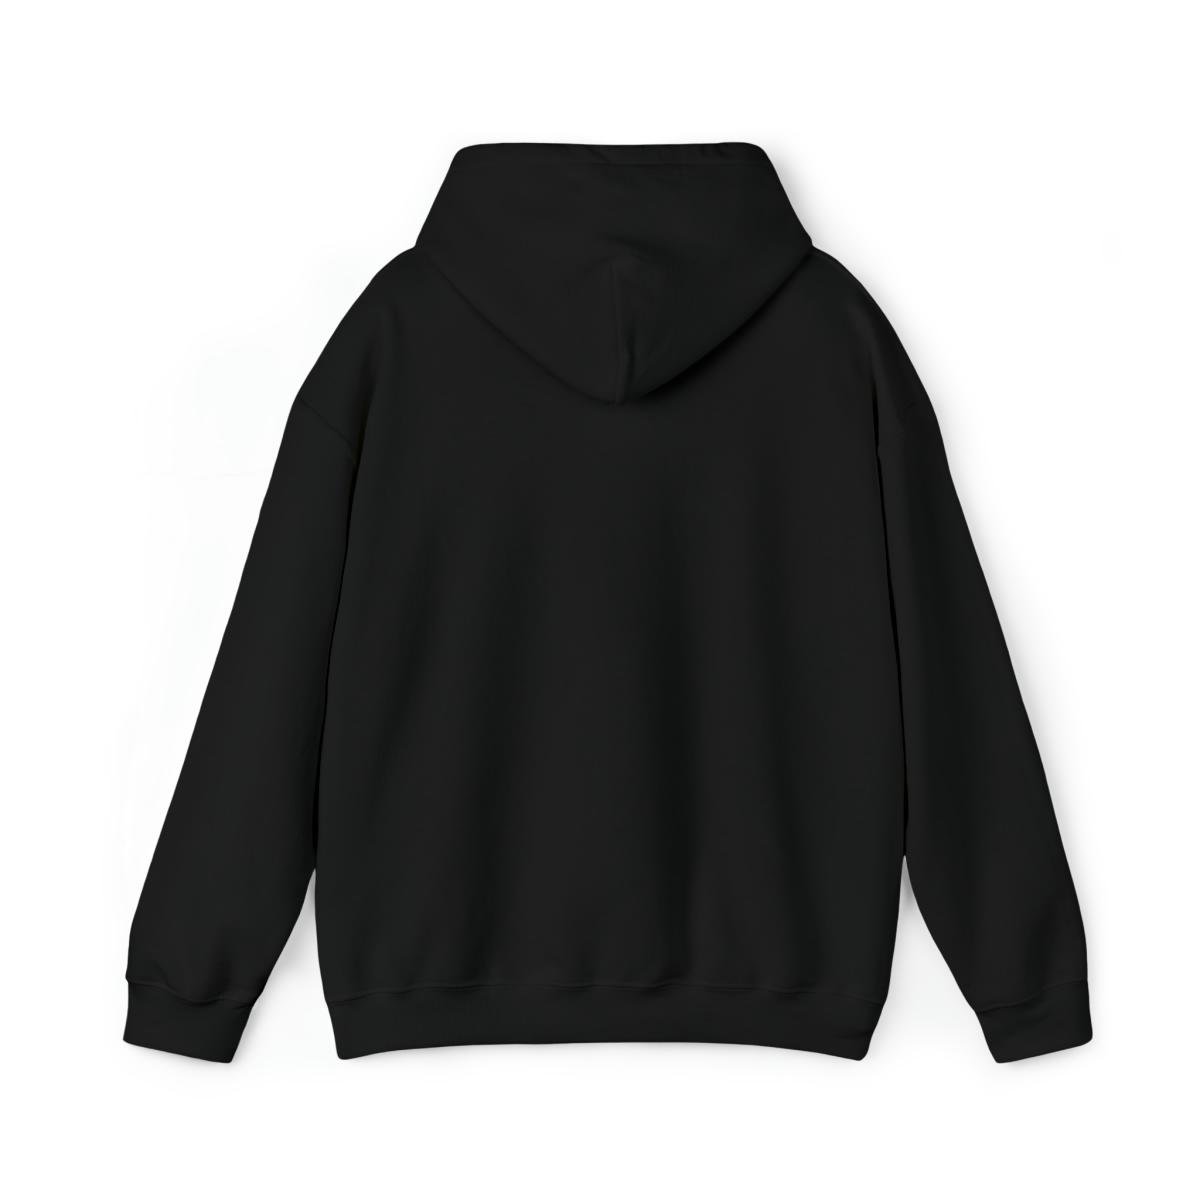 Fear Not – Riptide Pullover Hooded Sweatshirt